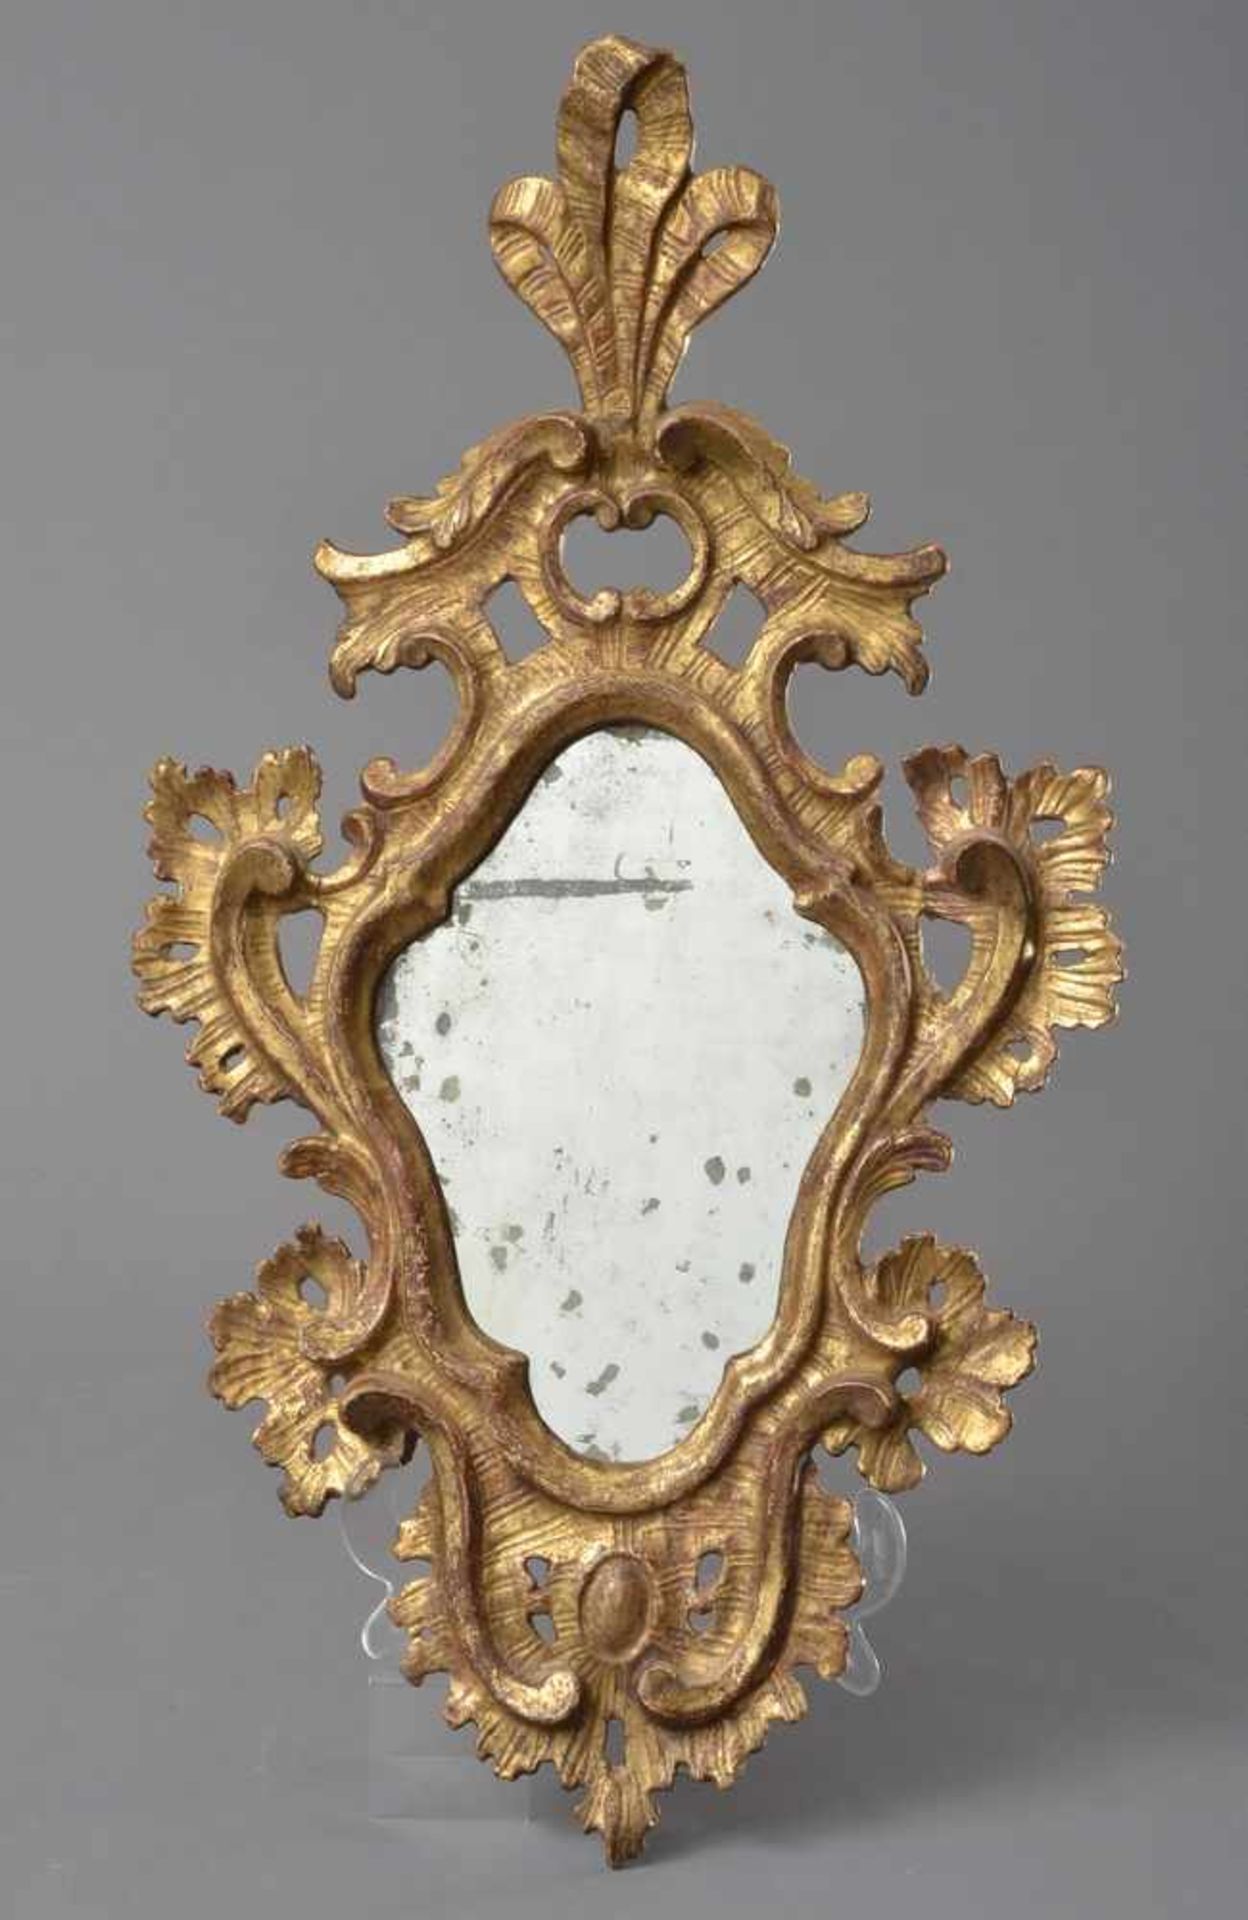 Barocker Spiegel mit altem Glas in einer geschweiften Raute, hohe Schleifenbekrönung mit